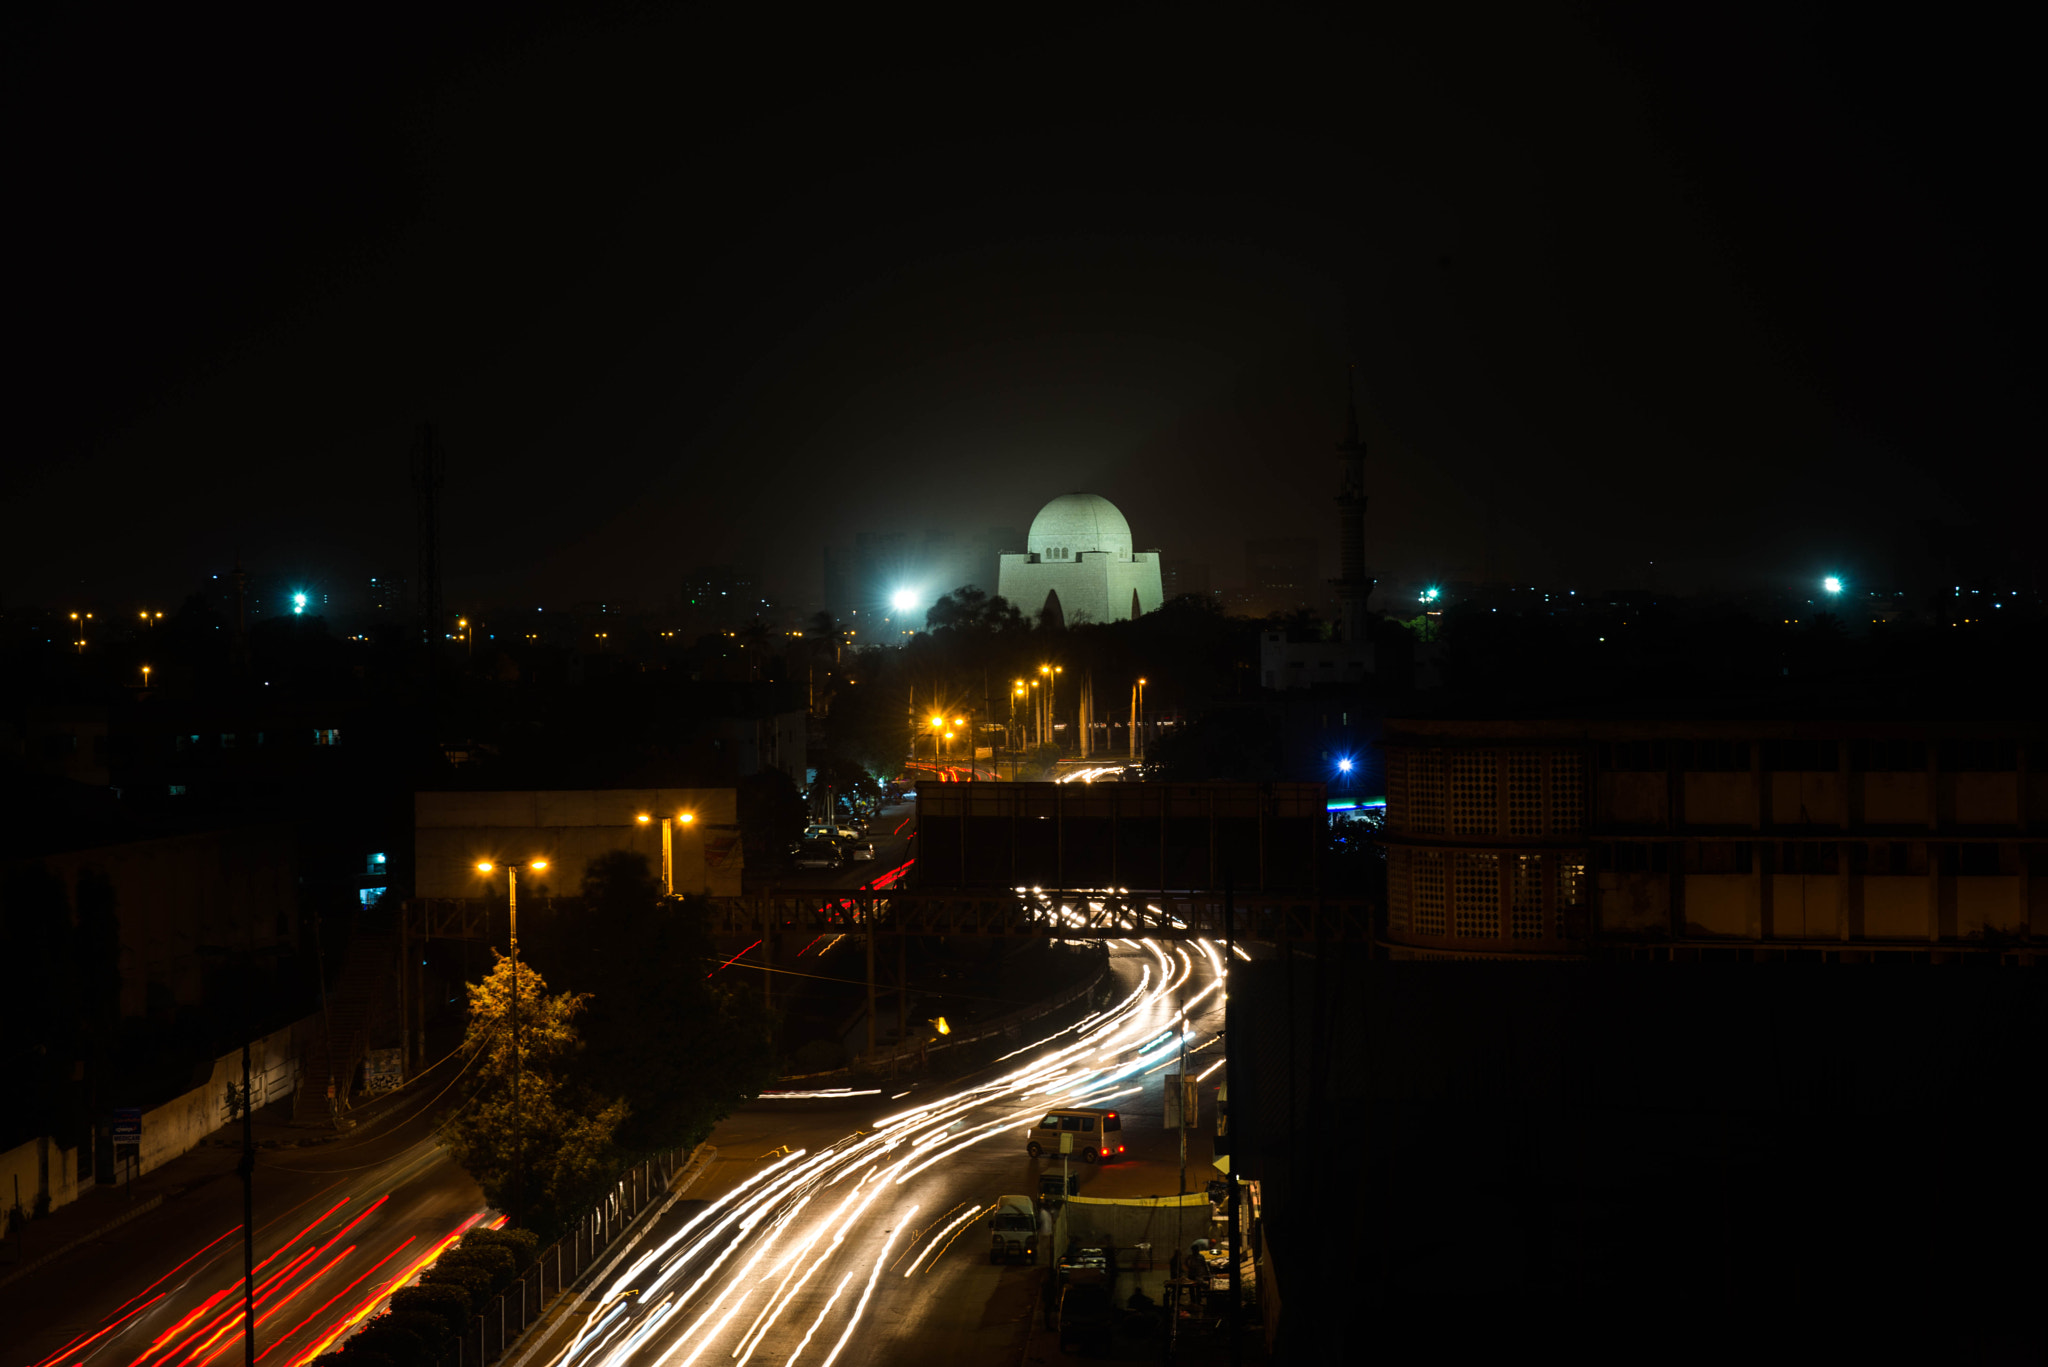 Nikon D610 + AF Zoom-Nikkor 28-105mm f/3.5-4.5D IF sample photo. Karachi photography